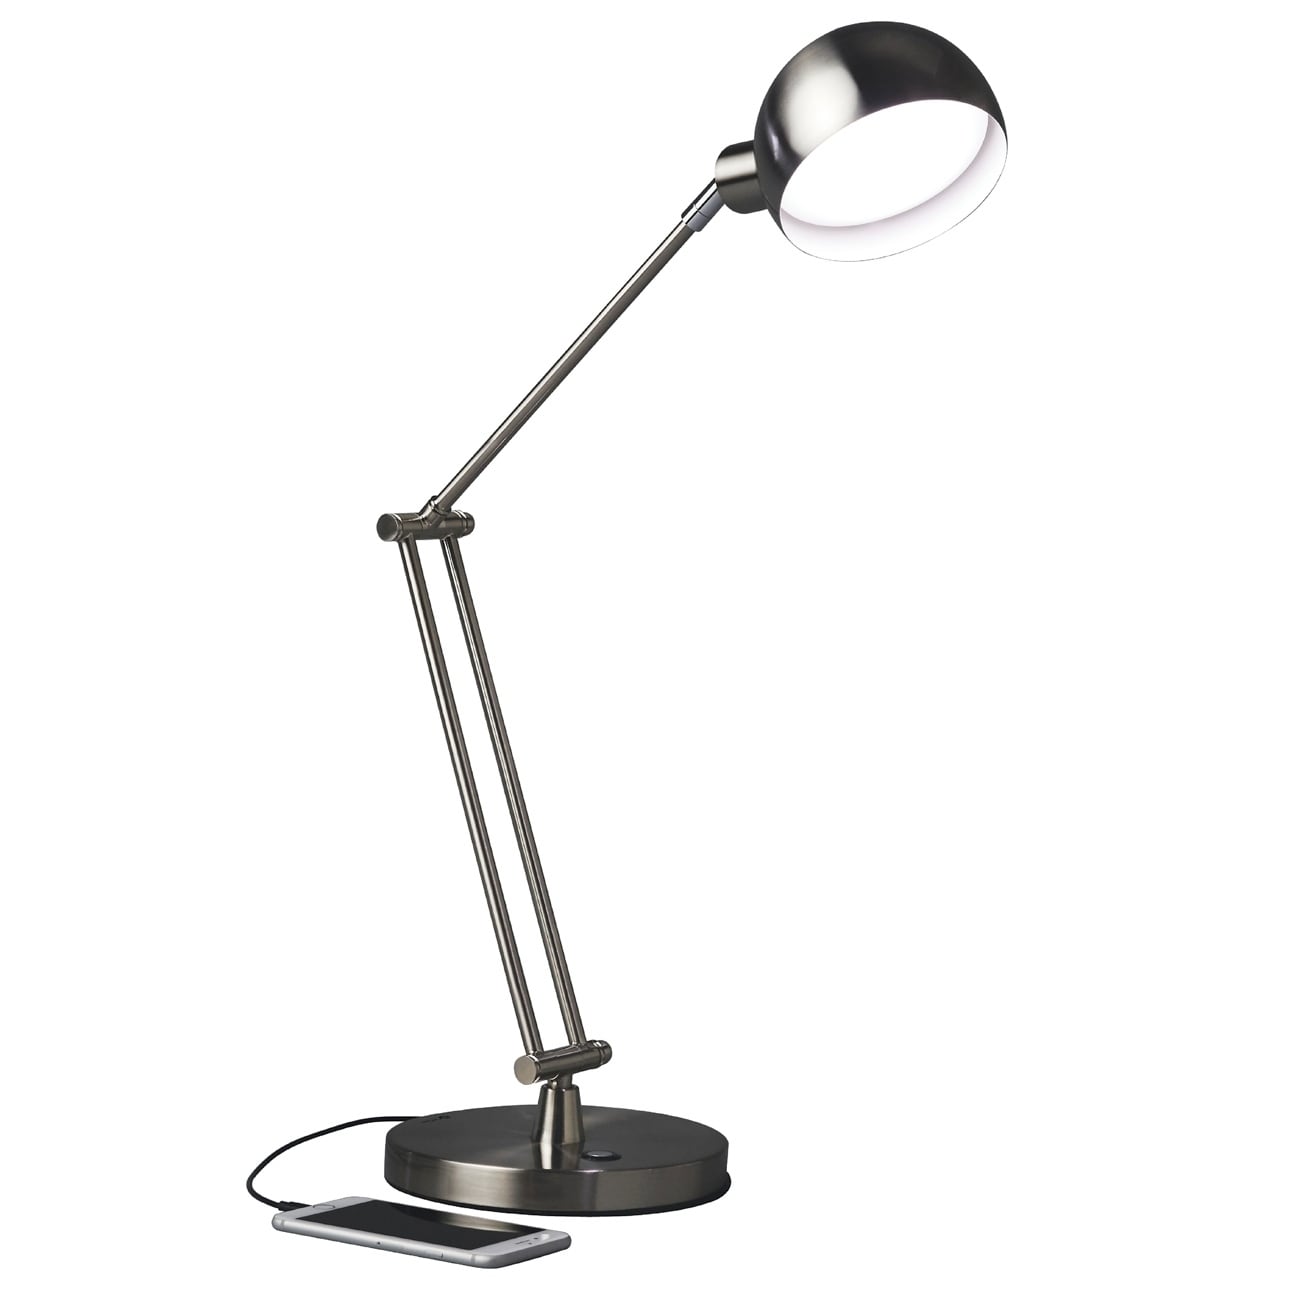 OTT LITE FLEXABLE ARM DESK LAMP - household items - by owner